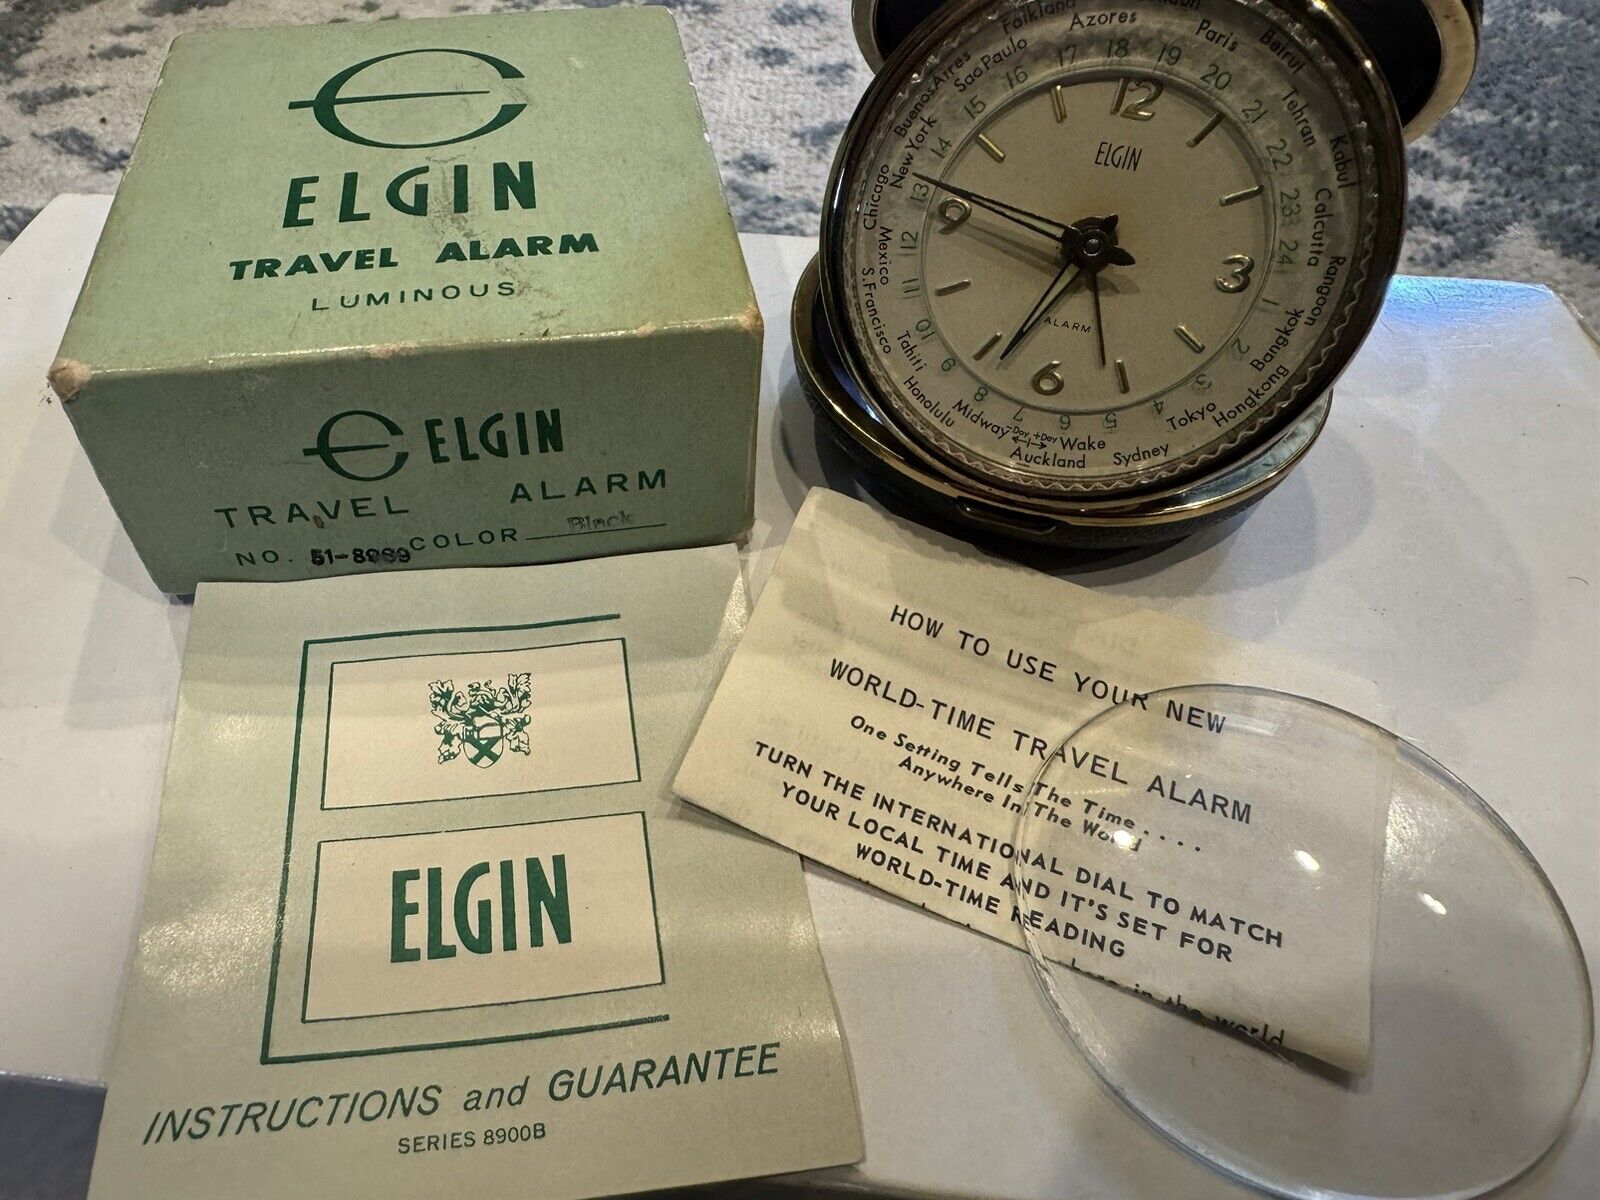 NEW Vintage 1969 Elgin World Time Travel Alarm 8989 Black Port of Los Angeles